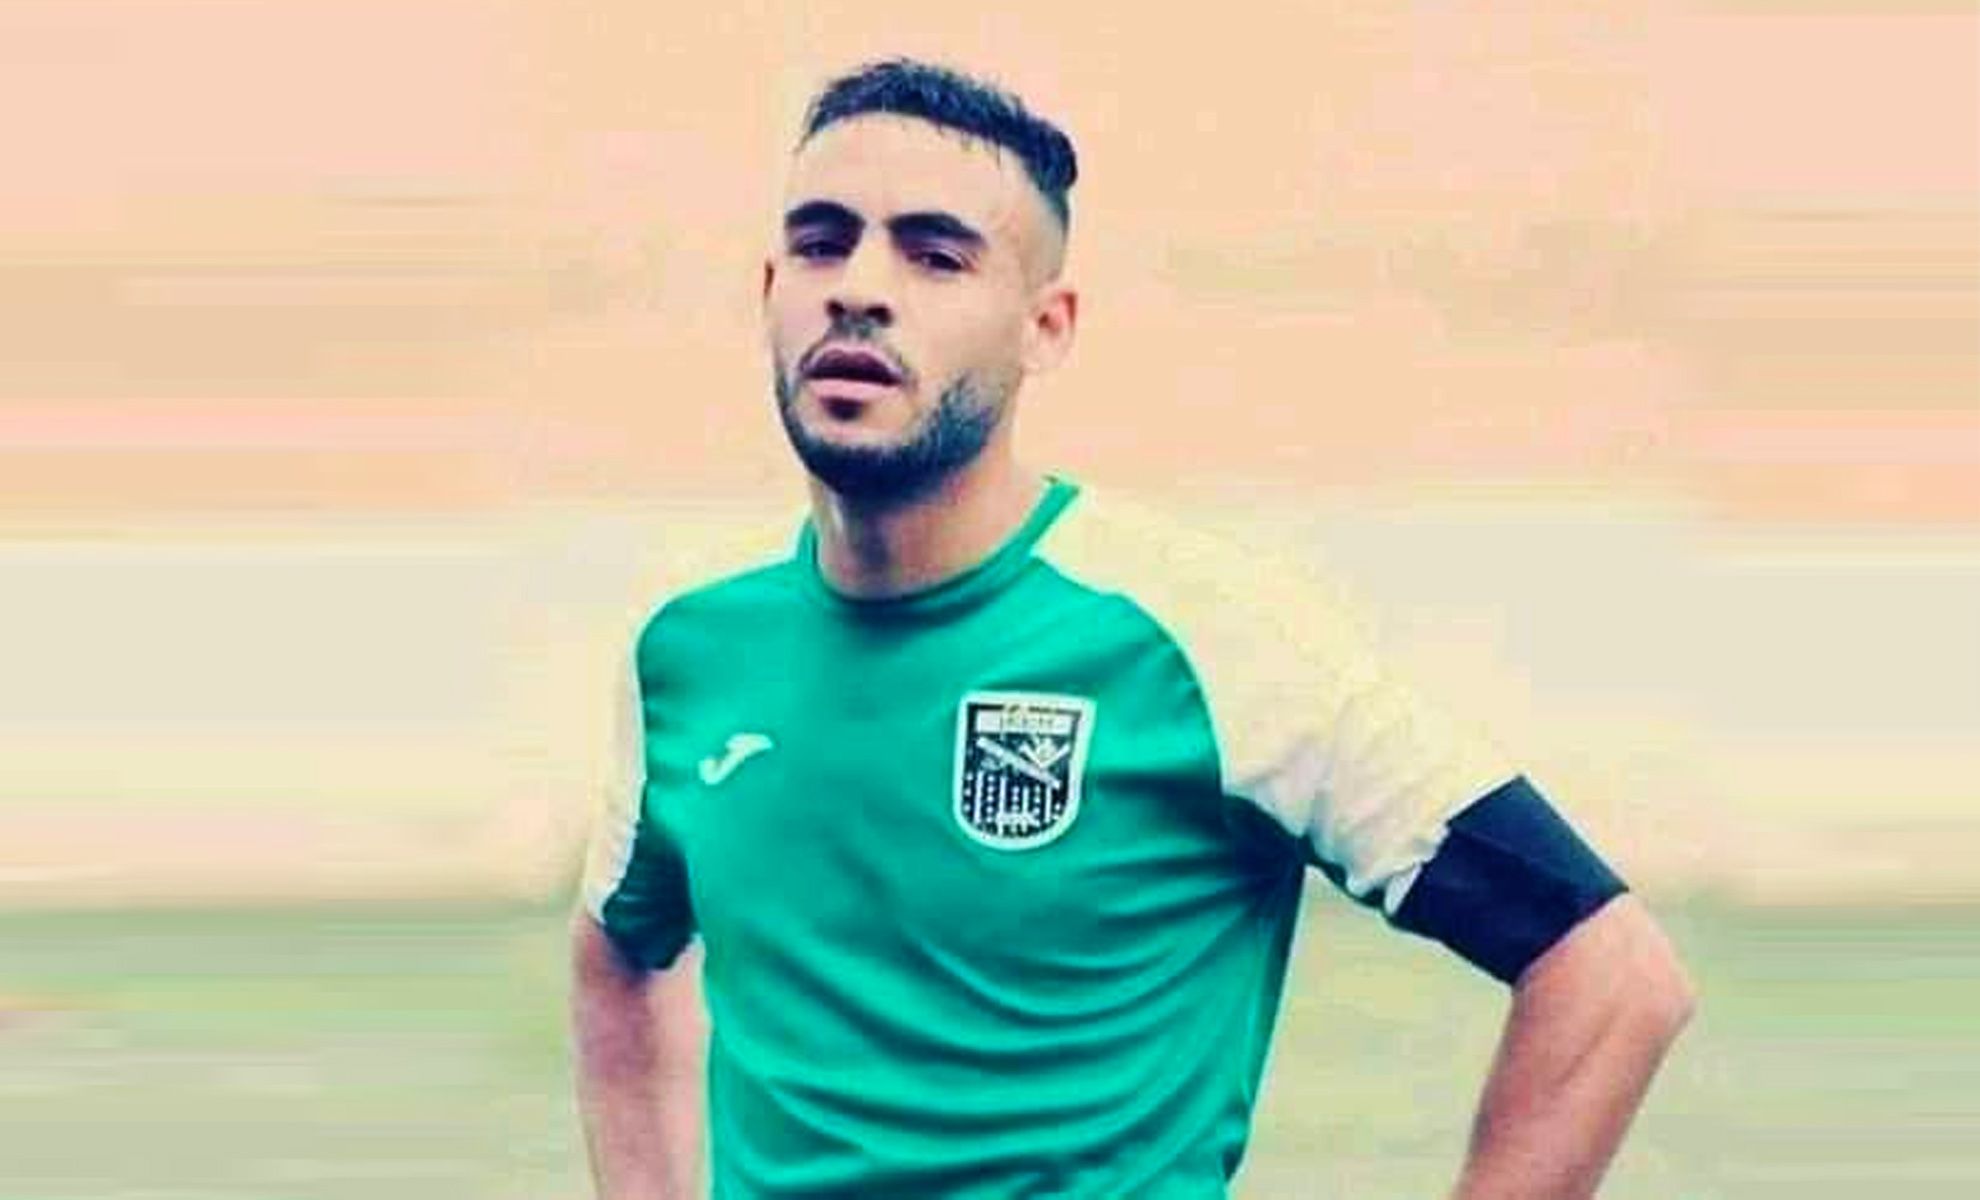 Futbolista murió por un golpe en la cabeza en pleno partido en Argelia